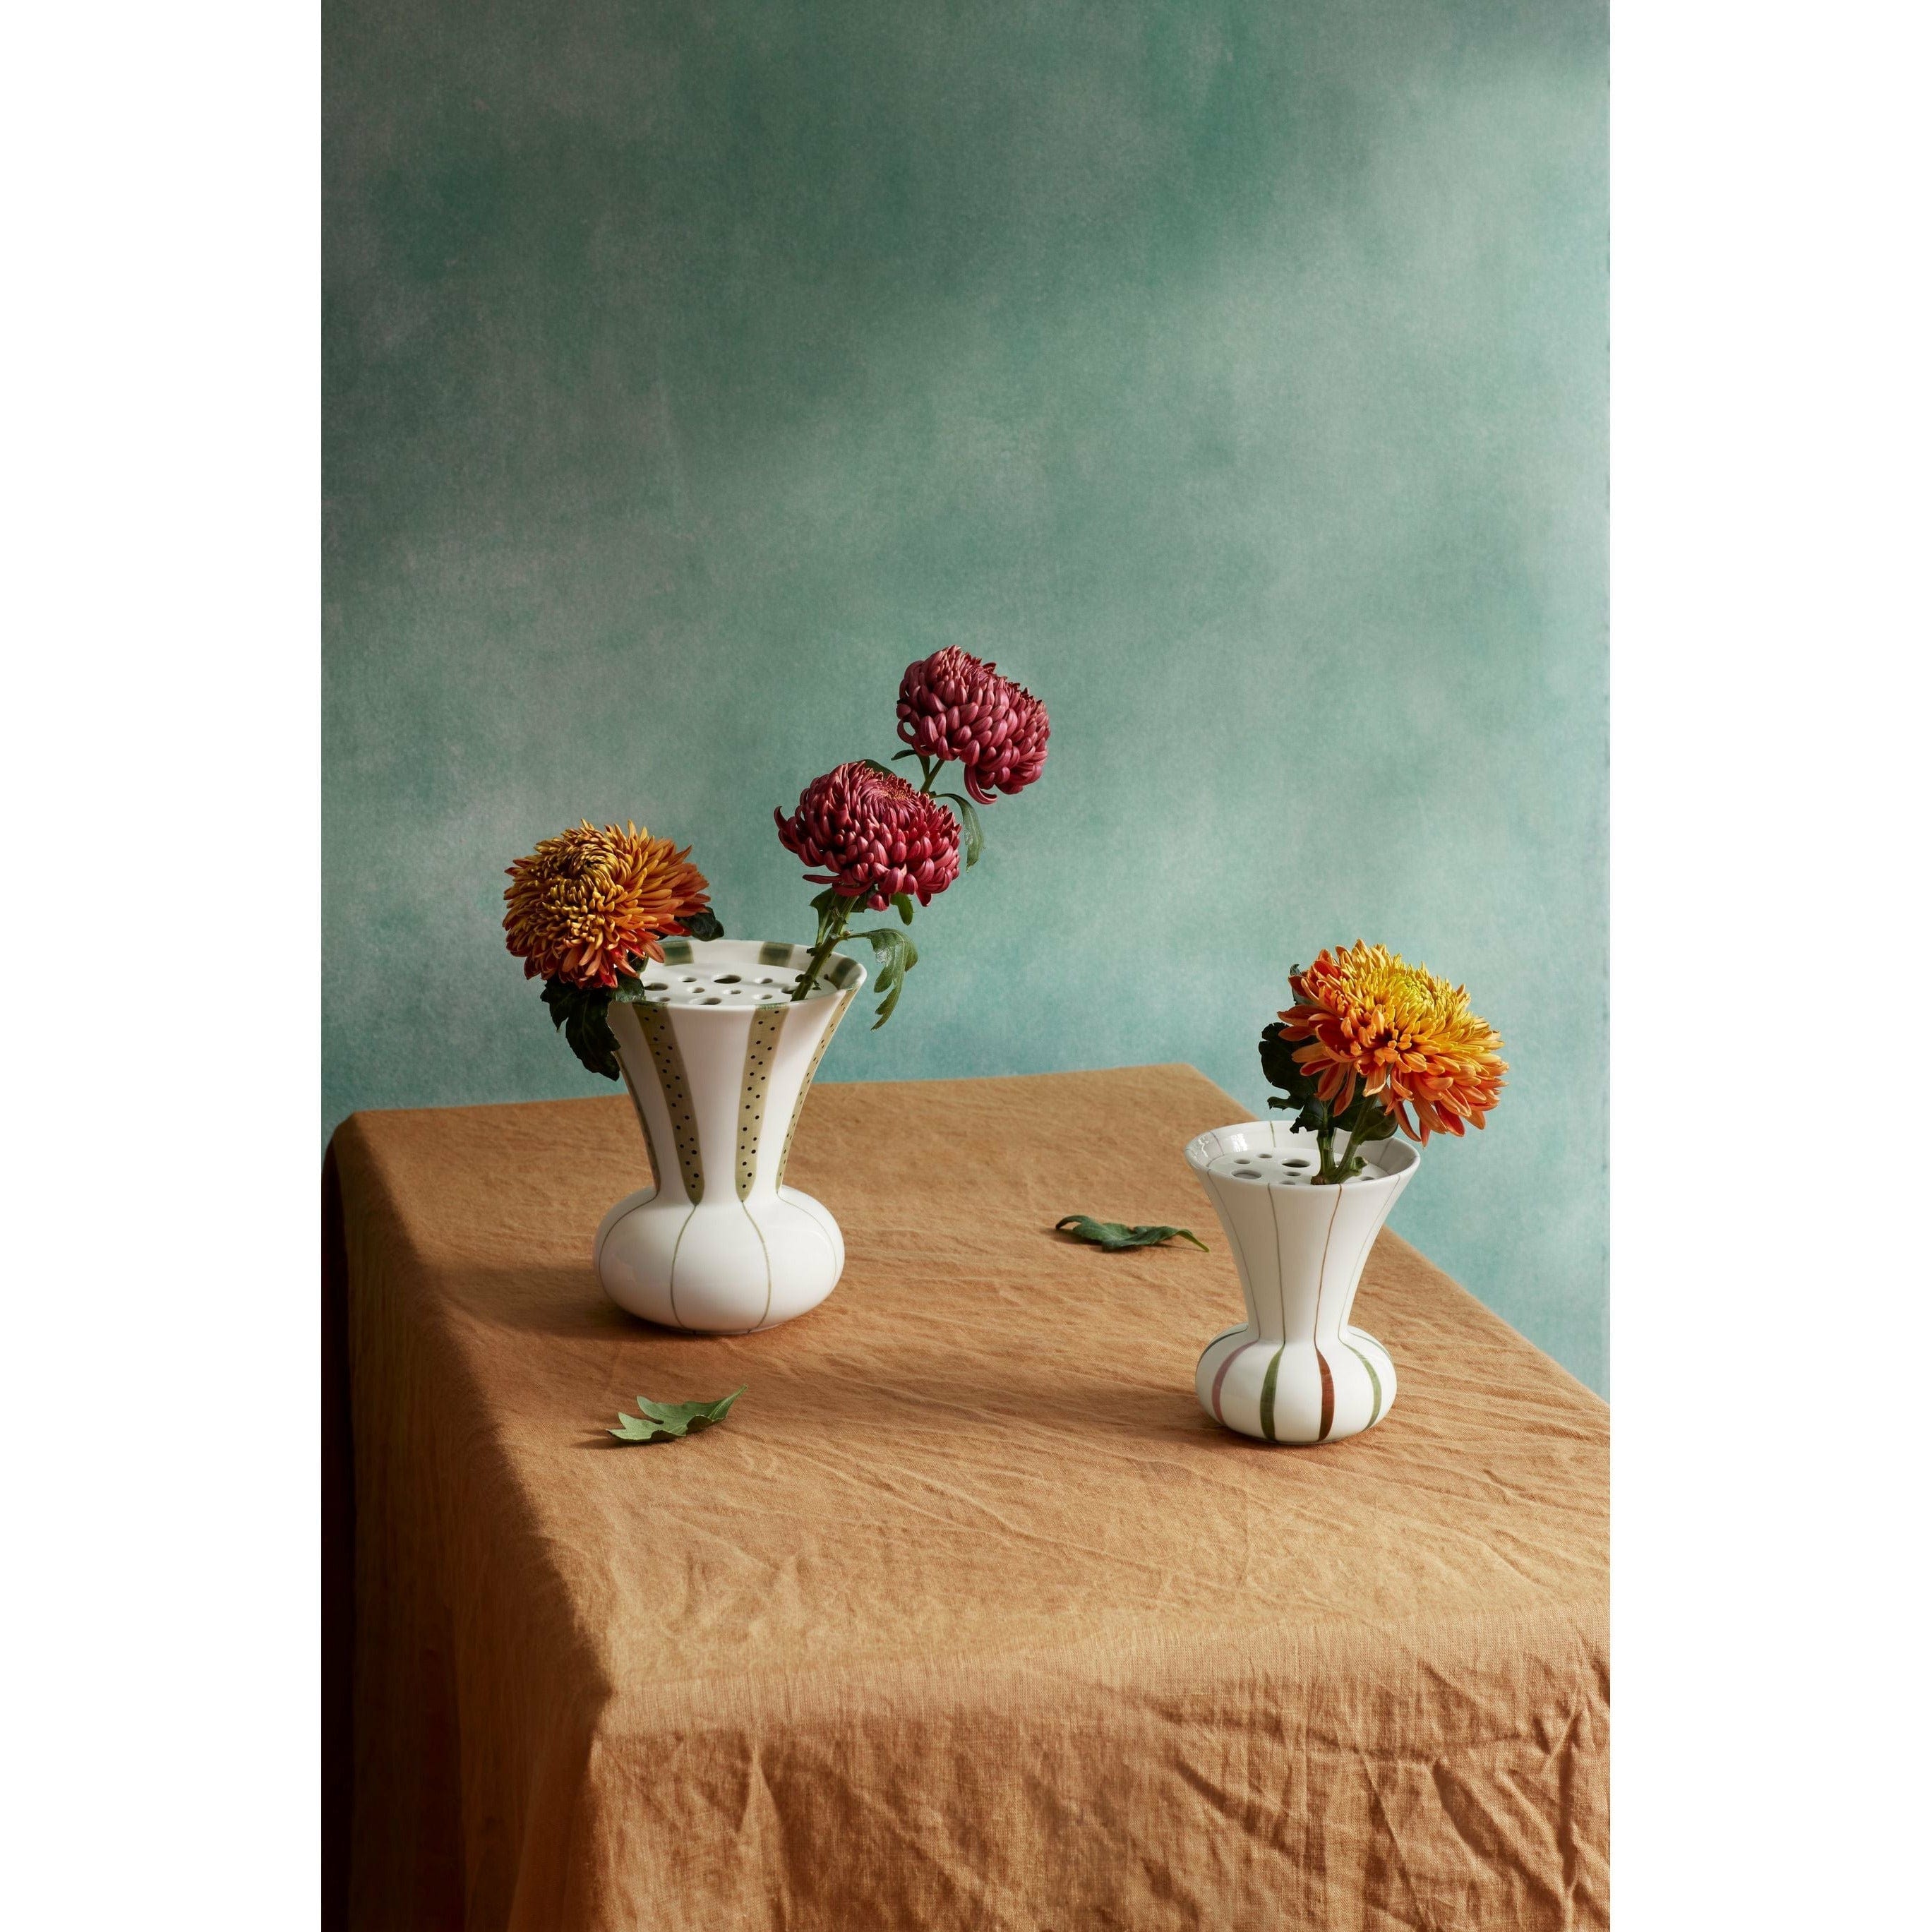 Kähler Signature Vase 15 cm, Multicolore